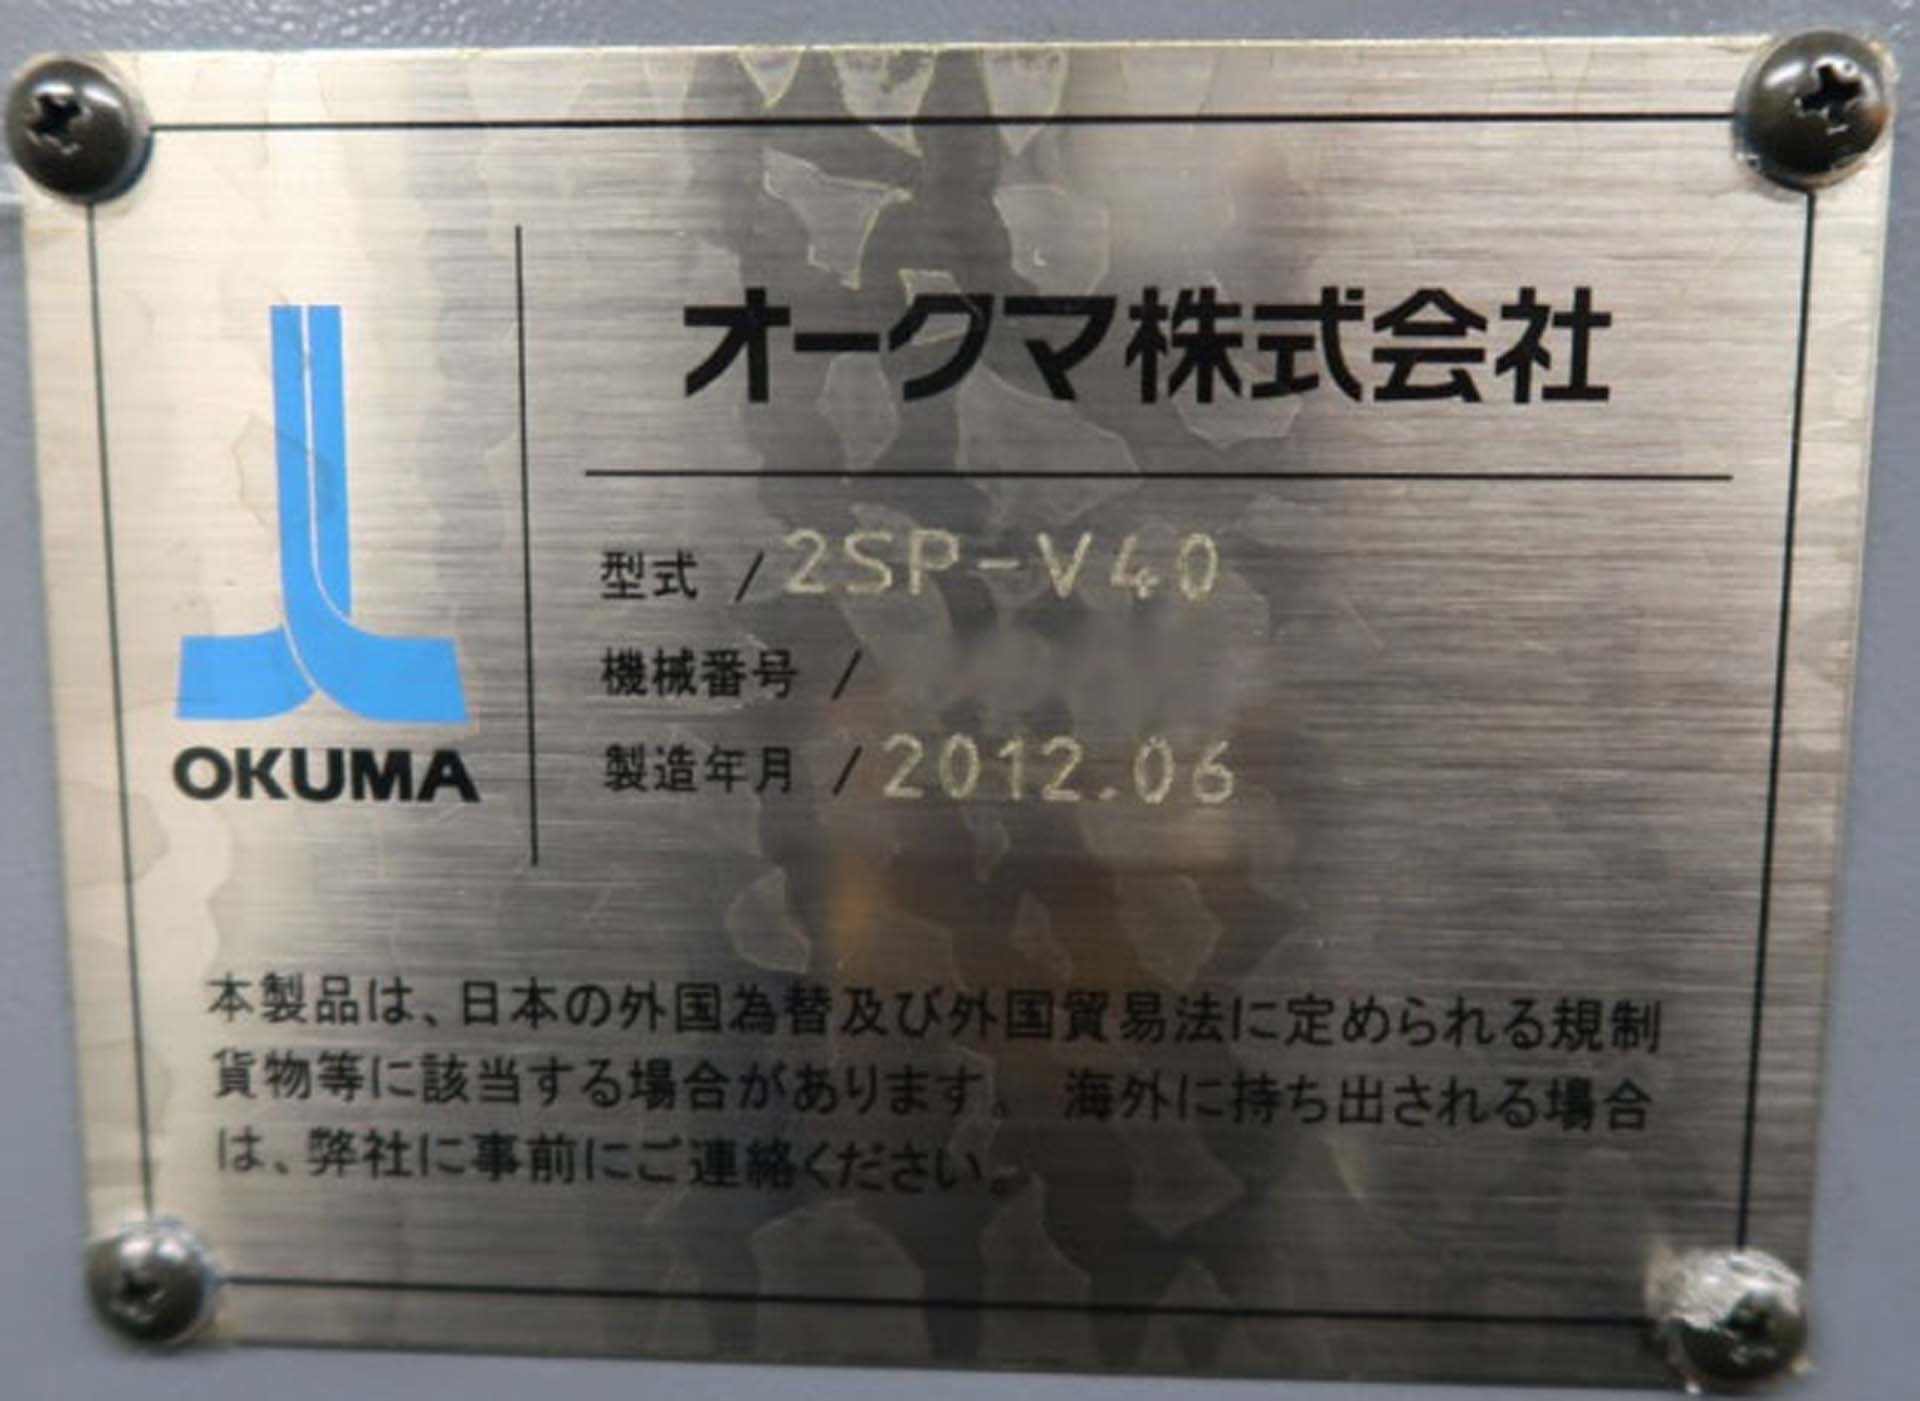 OKUMA 2SP-V40 工作機械 はセール価格 #9270437, 2012 で使用されてい 